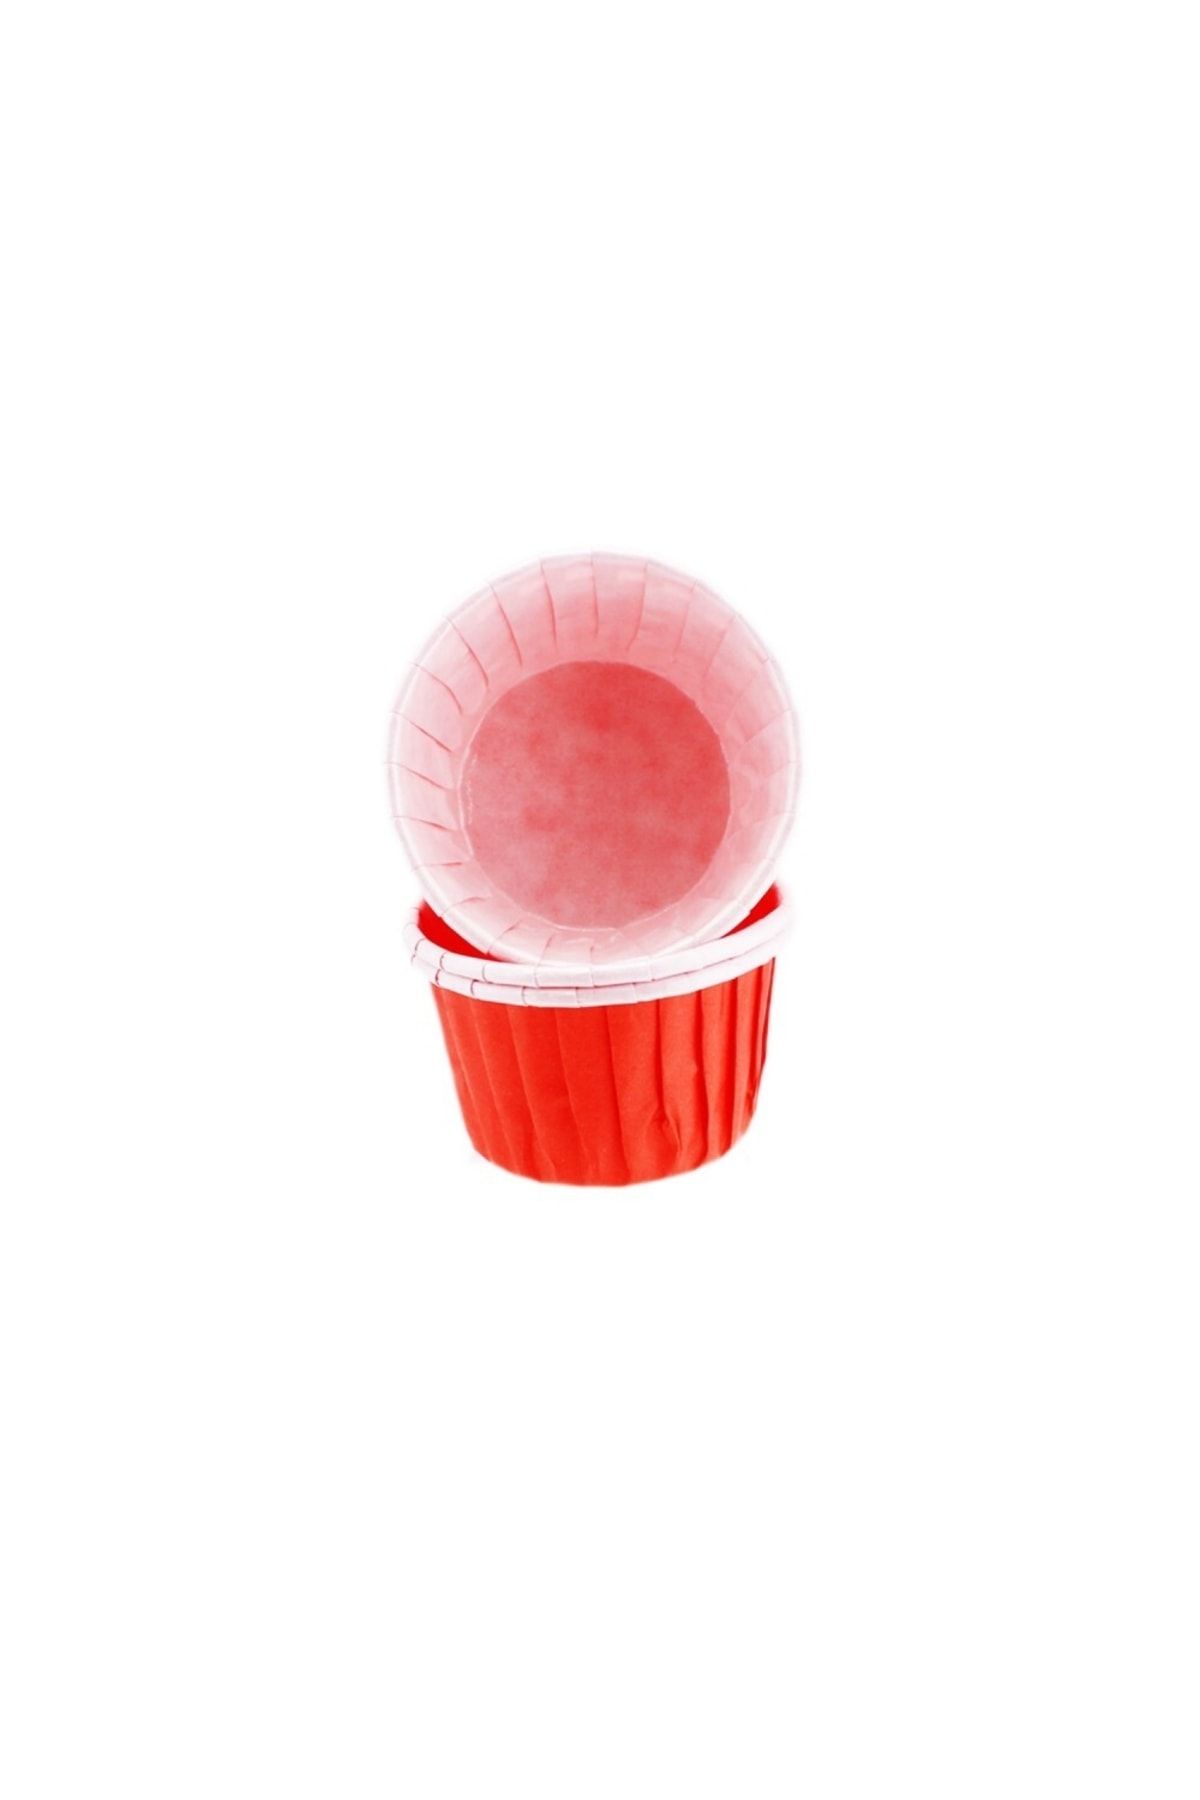 ELGALA Muffin Cupcake Kek Kalıbı Özel Pet Kapsül 20 Adet Kırmızı Renk